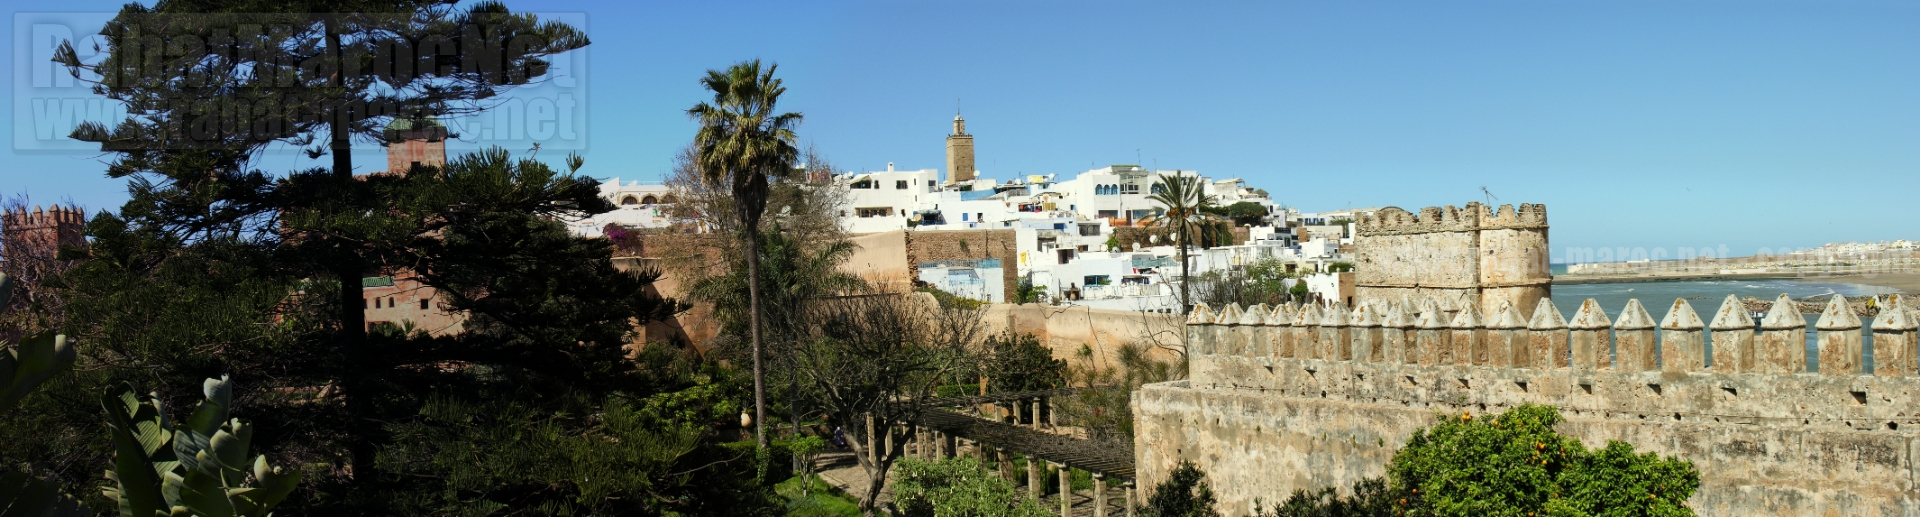 Panorama 3 Murailles oudayas Bouregreg